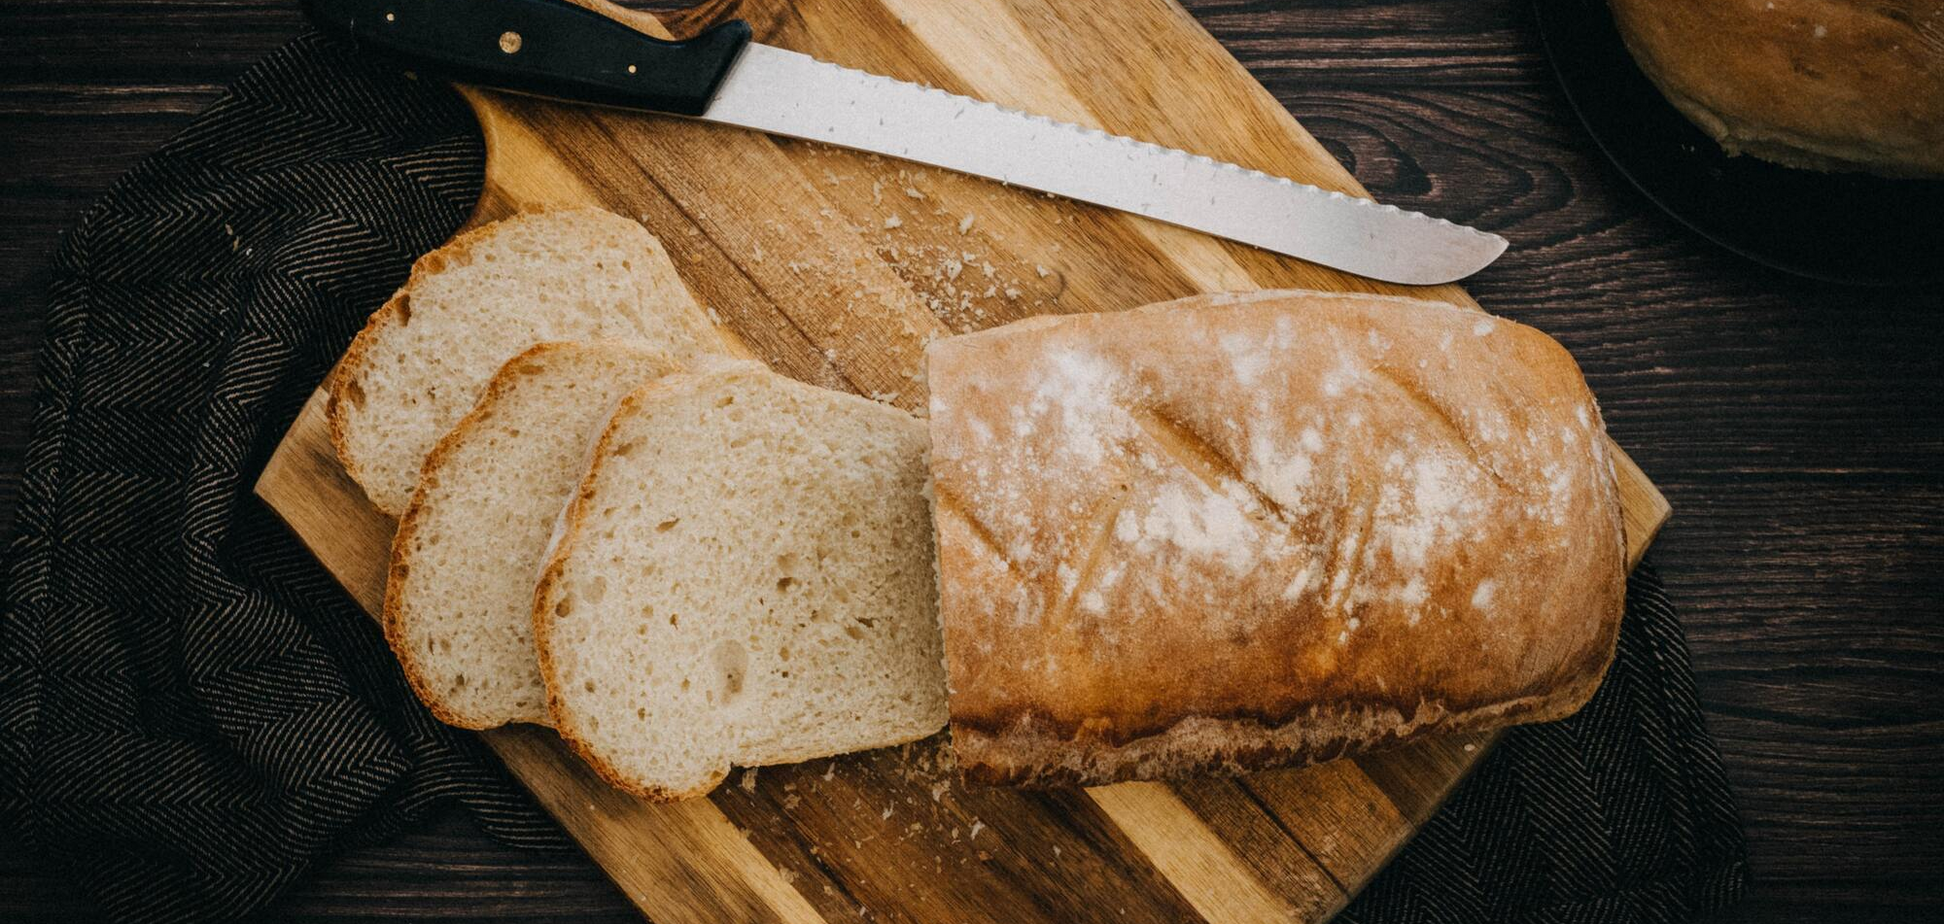 Что нельзя есть с хлебом: такие сочетания достаточно вредные